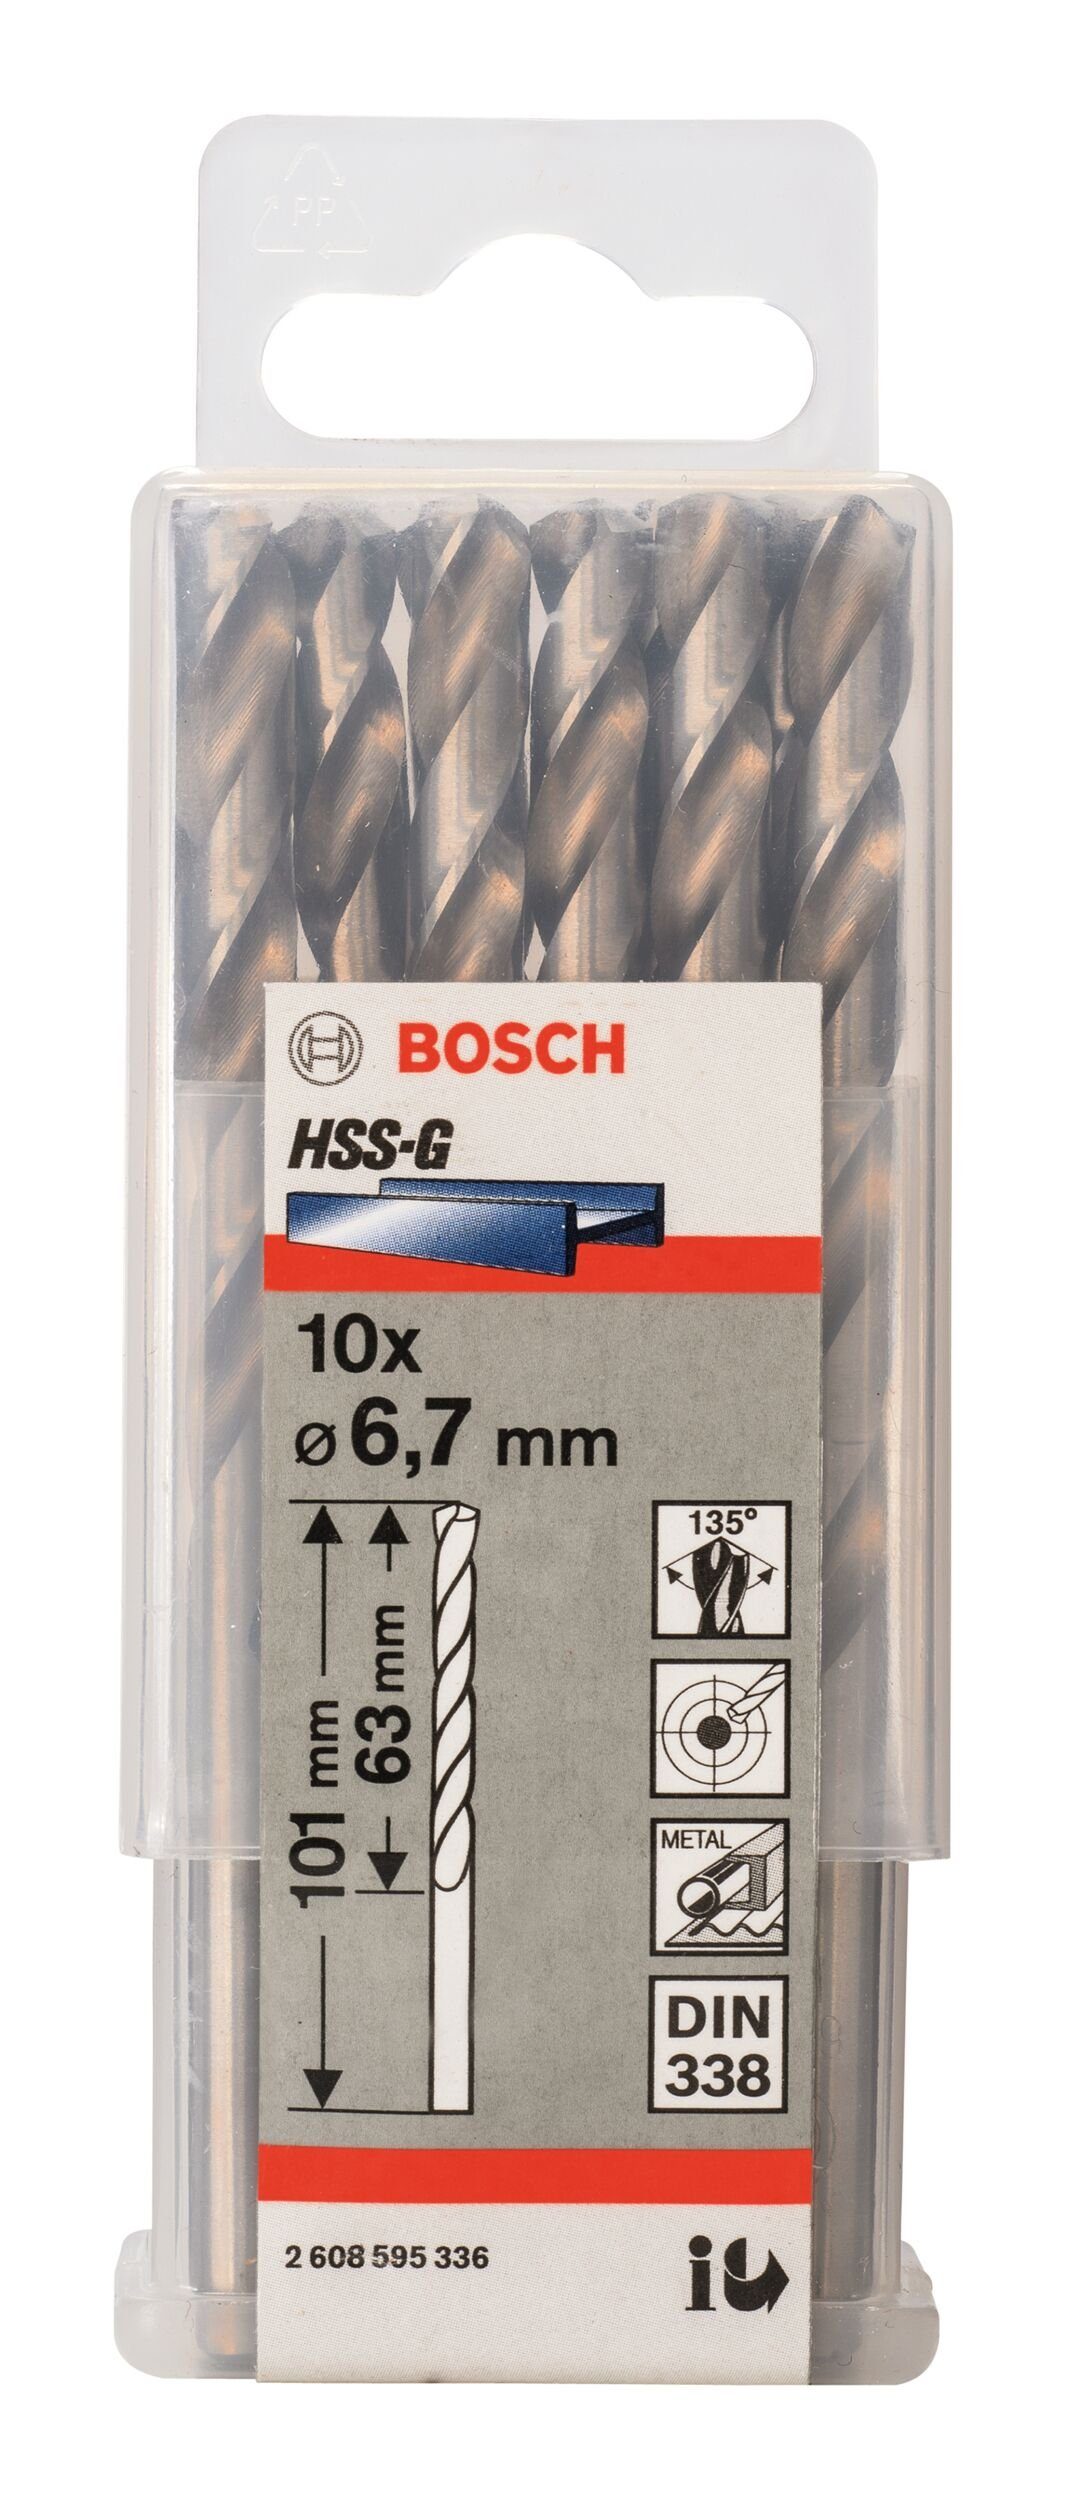 101 63 338) - BOSCH (DIN Stück), x - mm Metallbohrer, (10 x 10er-Pack 6,7 HSS-G